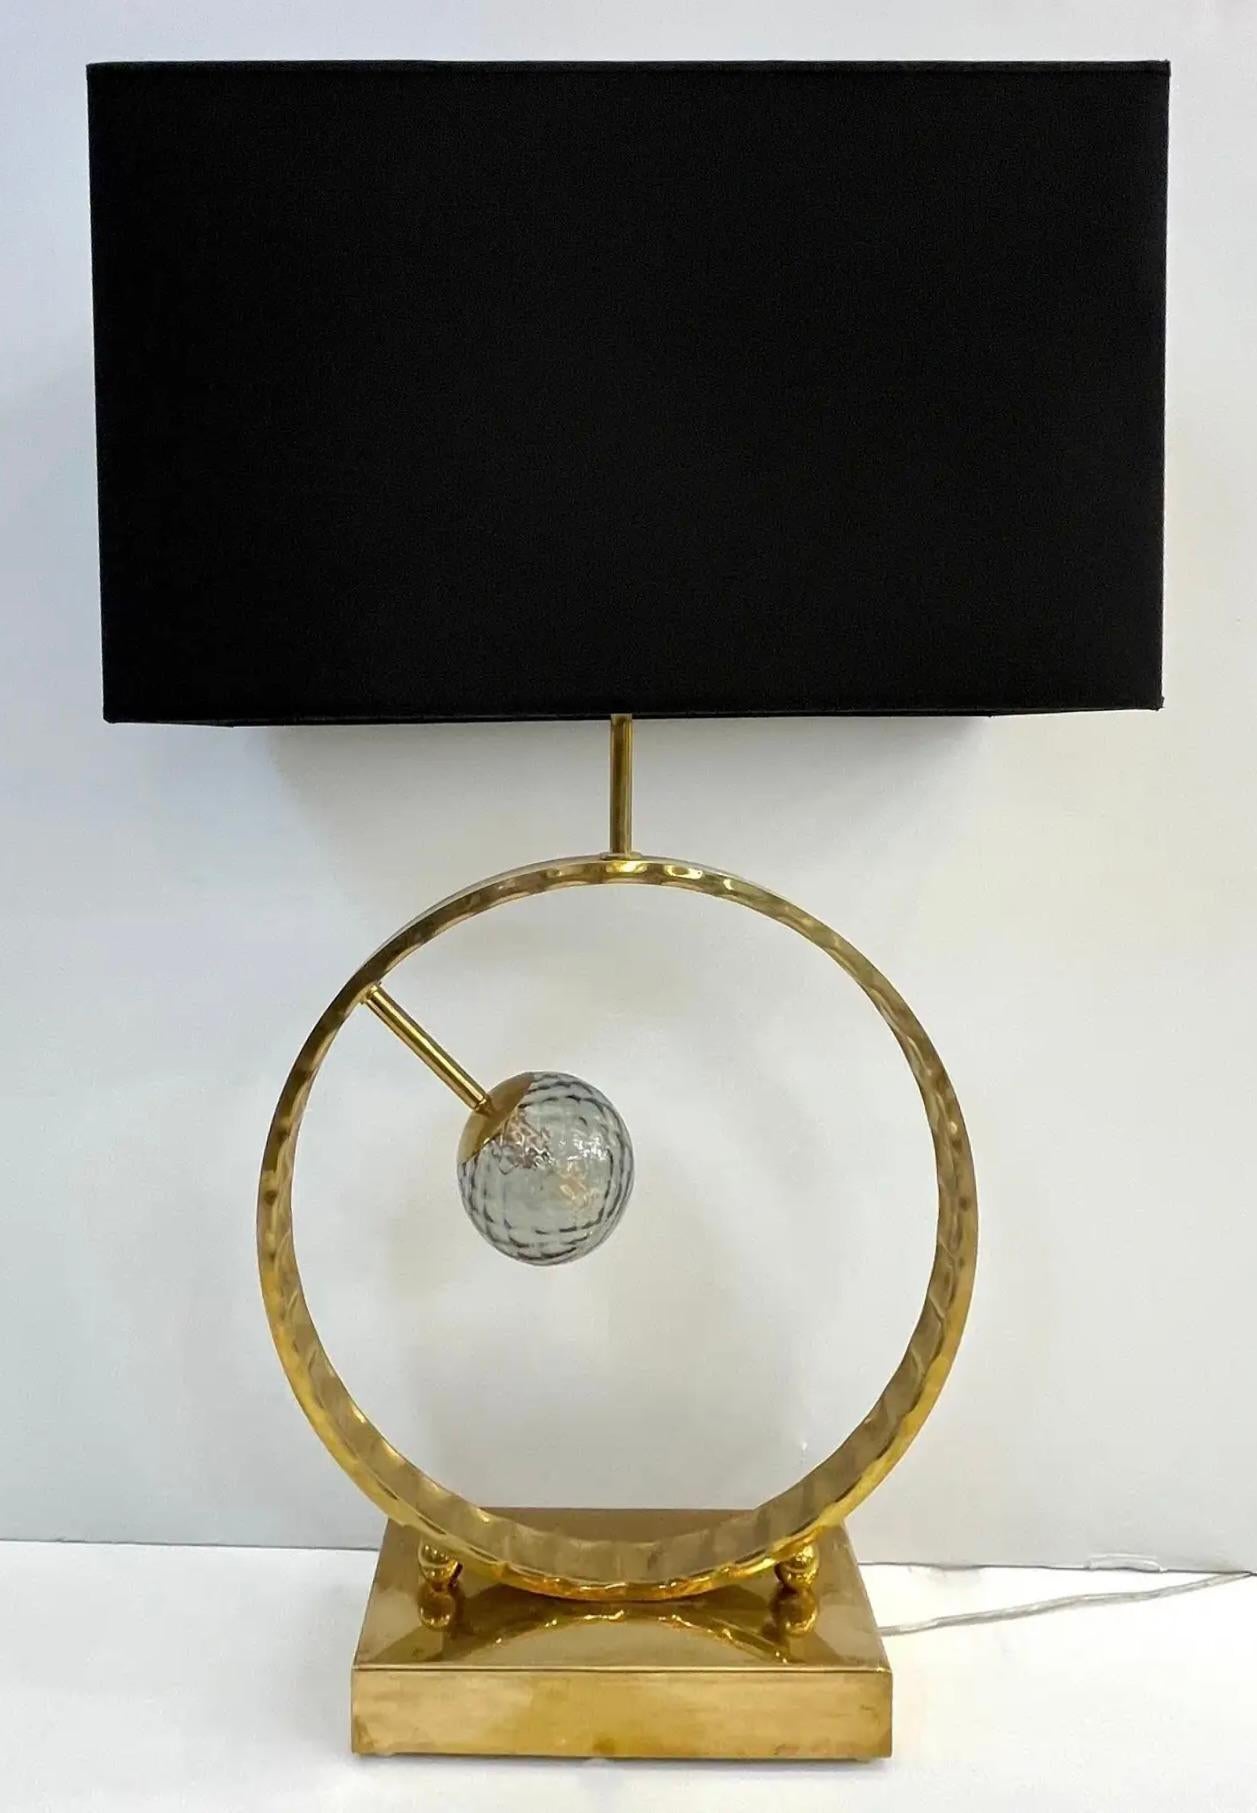 Les globes en verre Murano peuvent être choisis dans différentes couleurs, voir image - Une paire de lampes de table contemporaines très décoratives de grande taille, entièrement fabriquées à la main en Italie, avec un design géométrique minimaliste